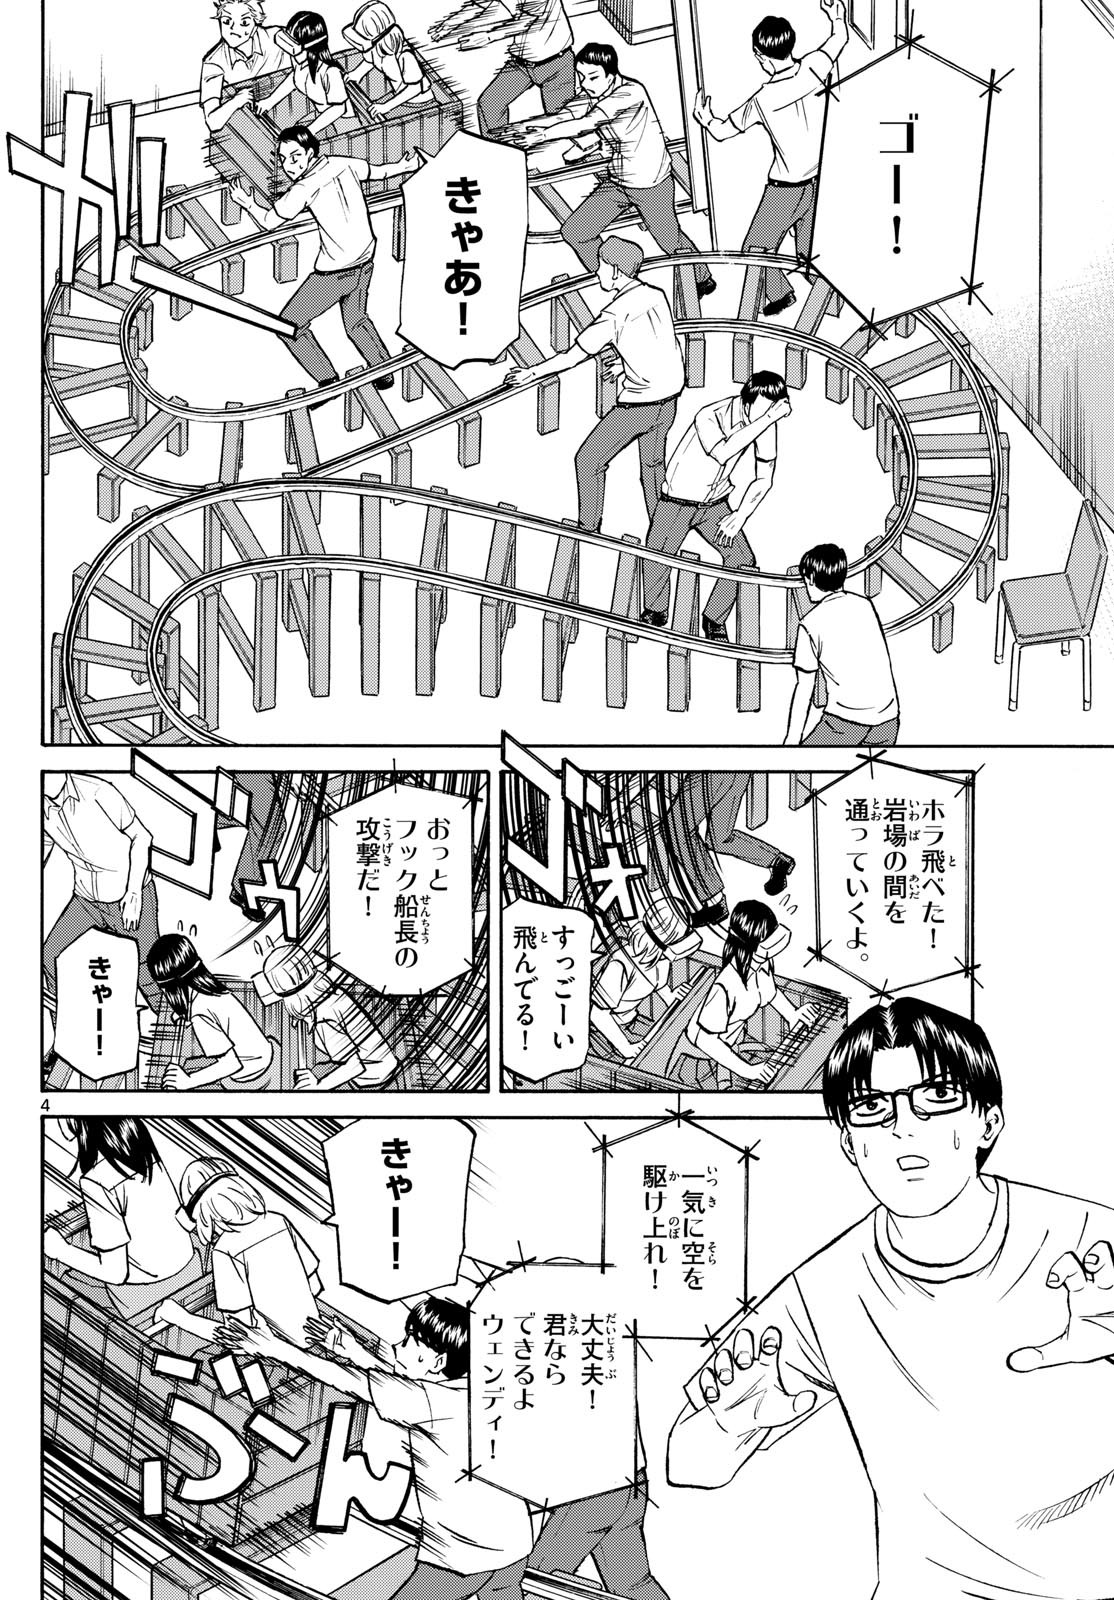 Ryu-to-Ichigo - Chapter 149 - Page 4